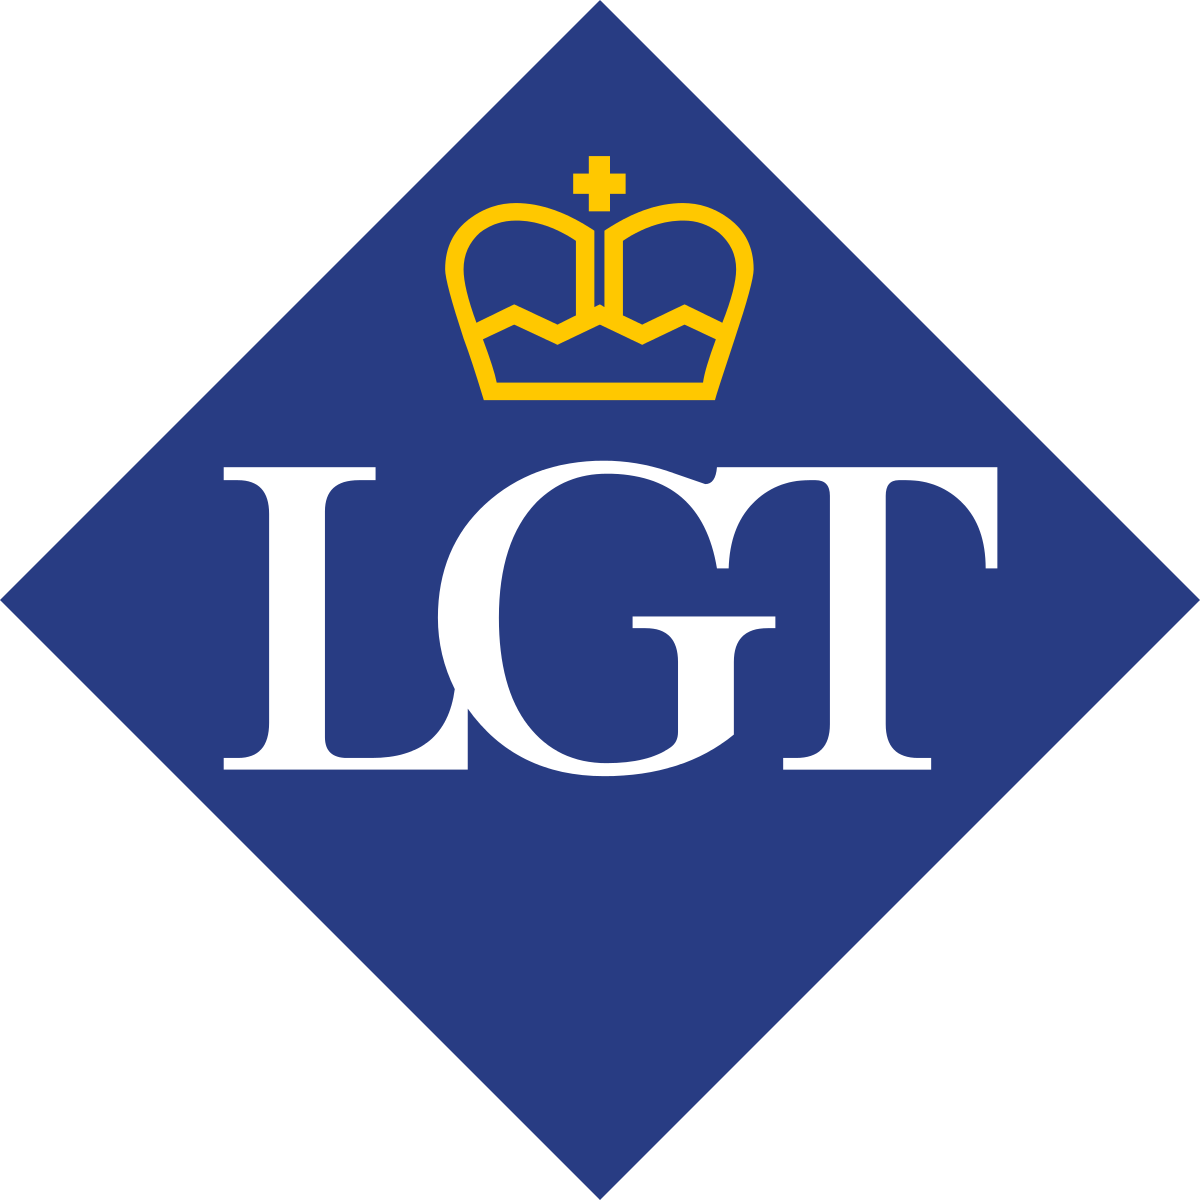 LGT (Middle East) Ltd